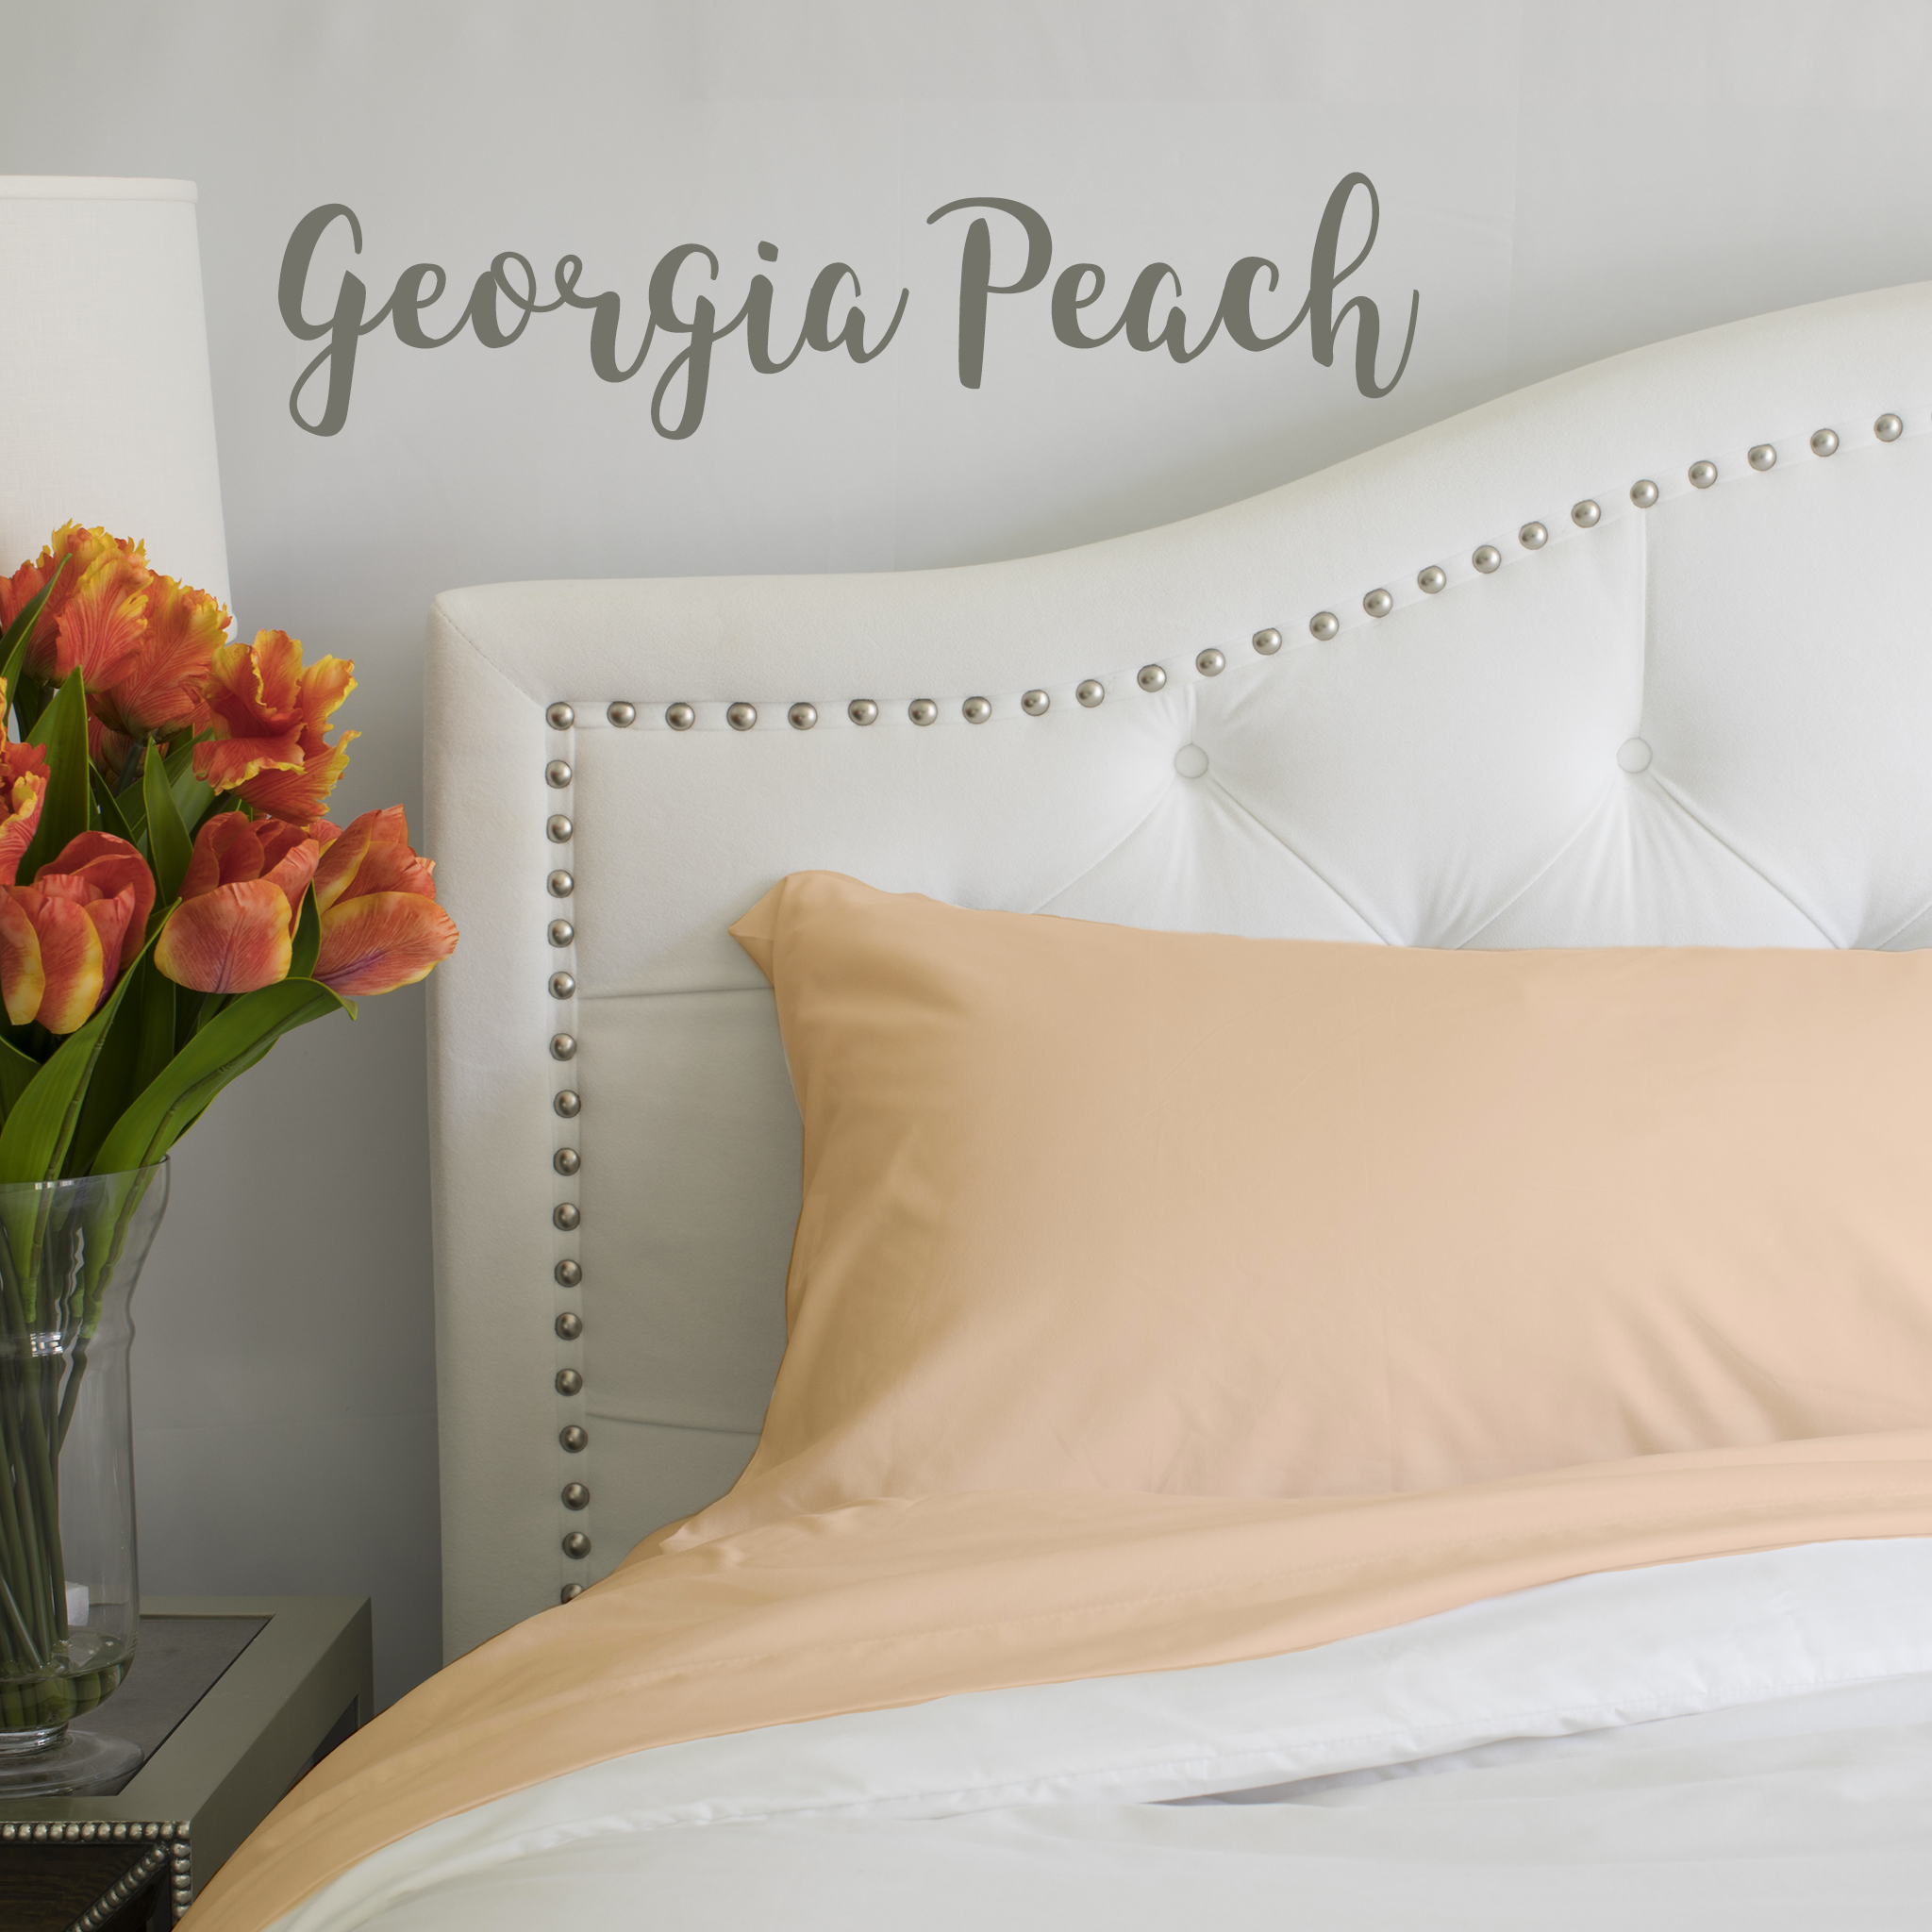 Georgia Peach Sheet Set